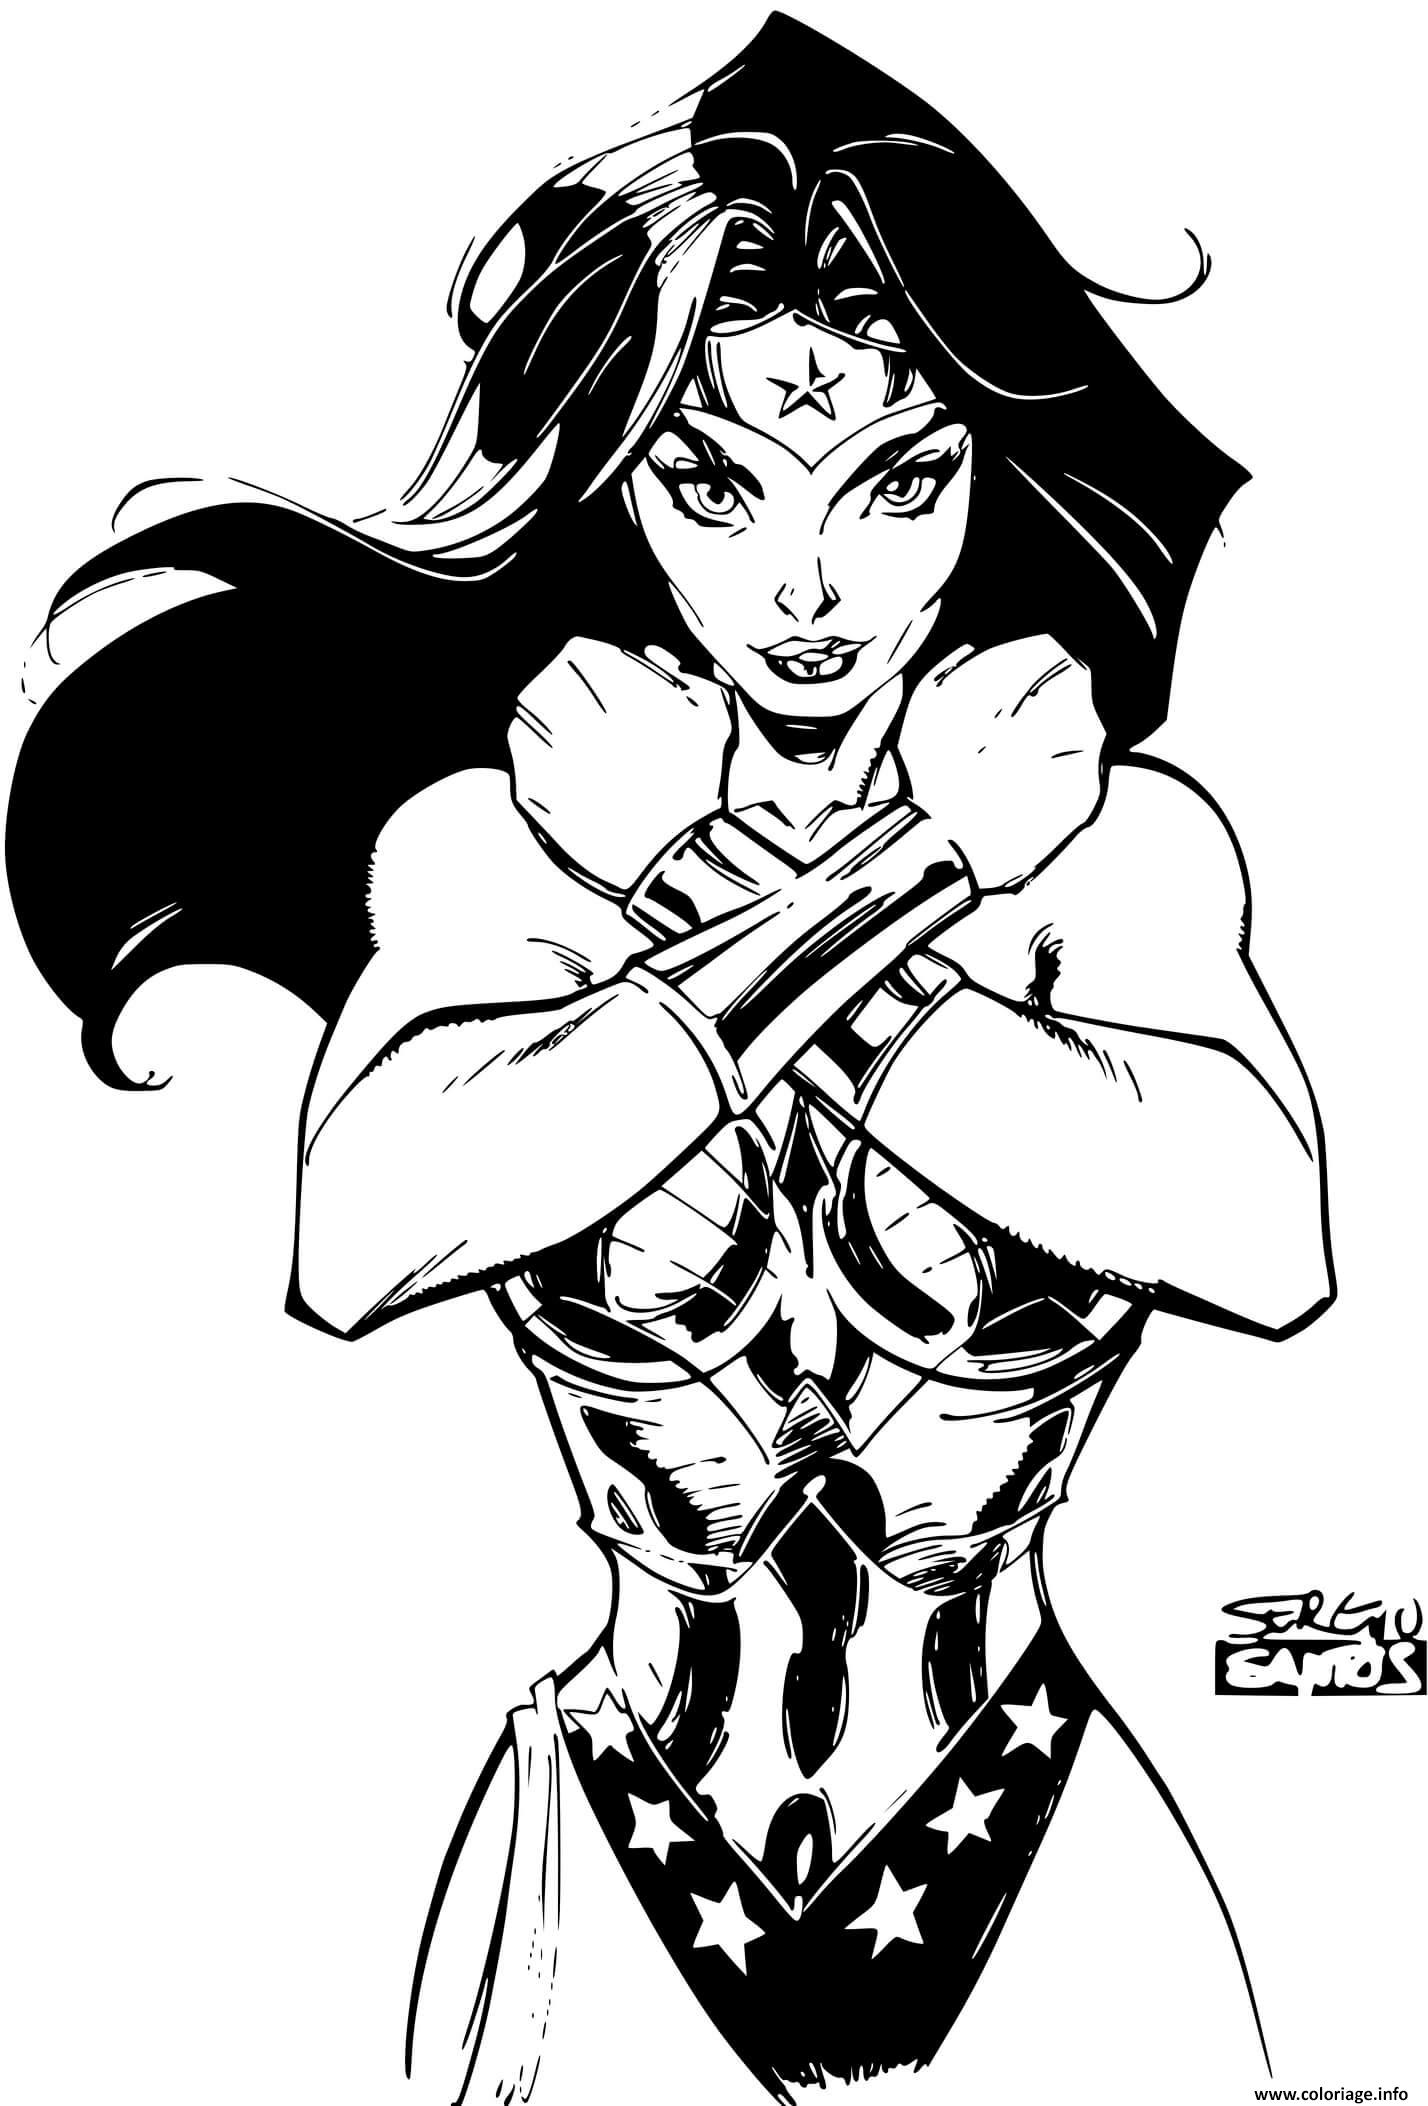 Dessin Super heroine wonder woman par sergioxantos dc comics Coloriage Gratuit à Imprimer